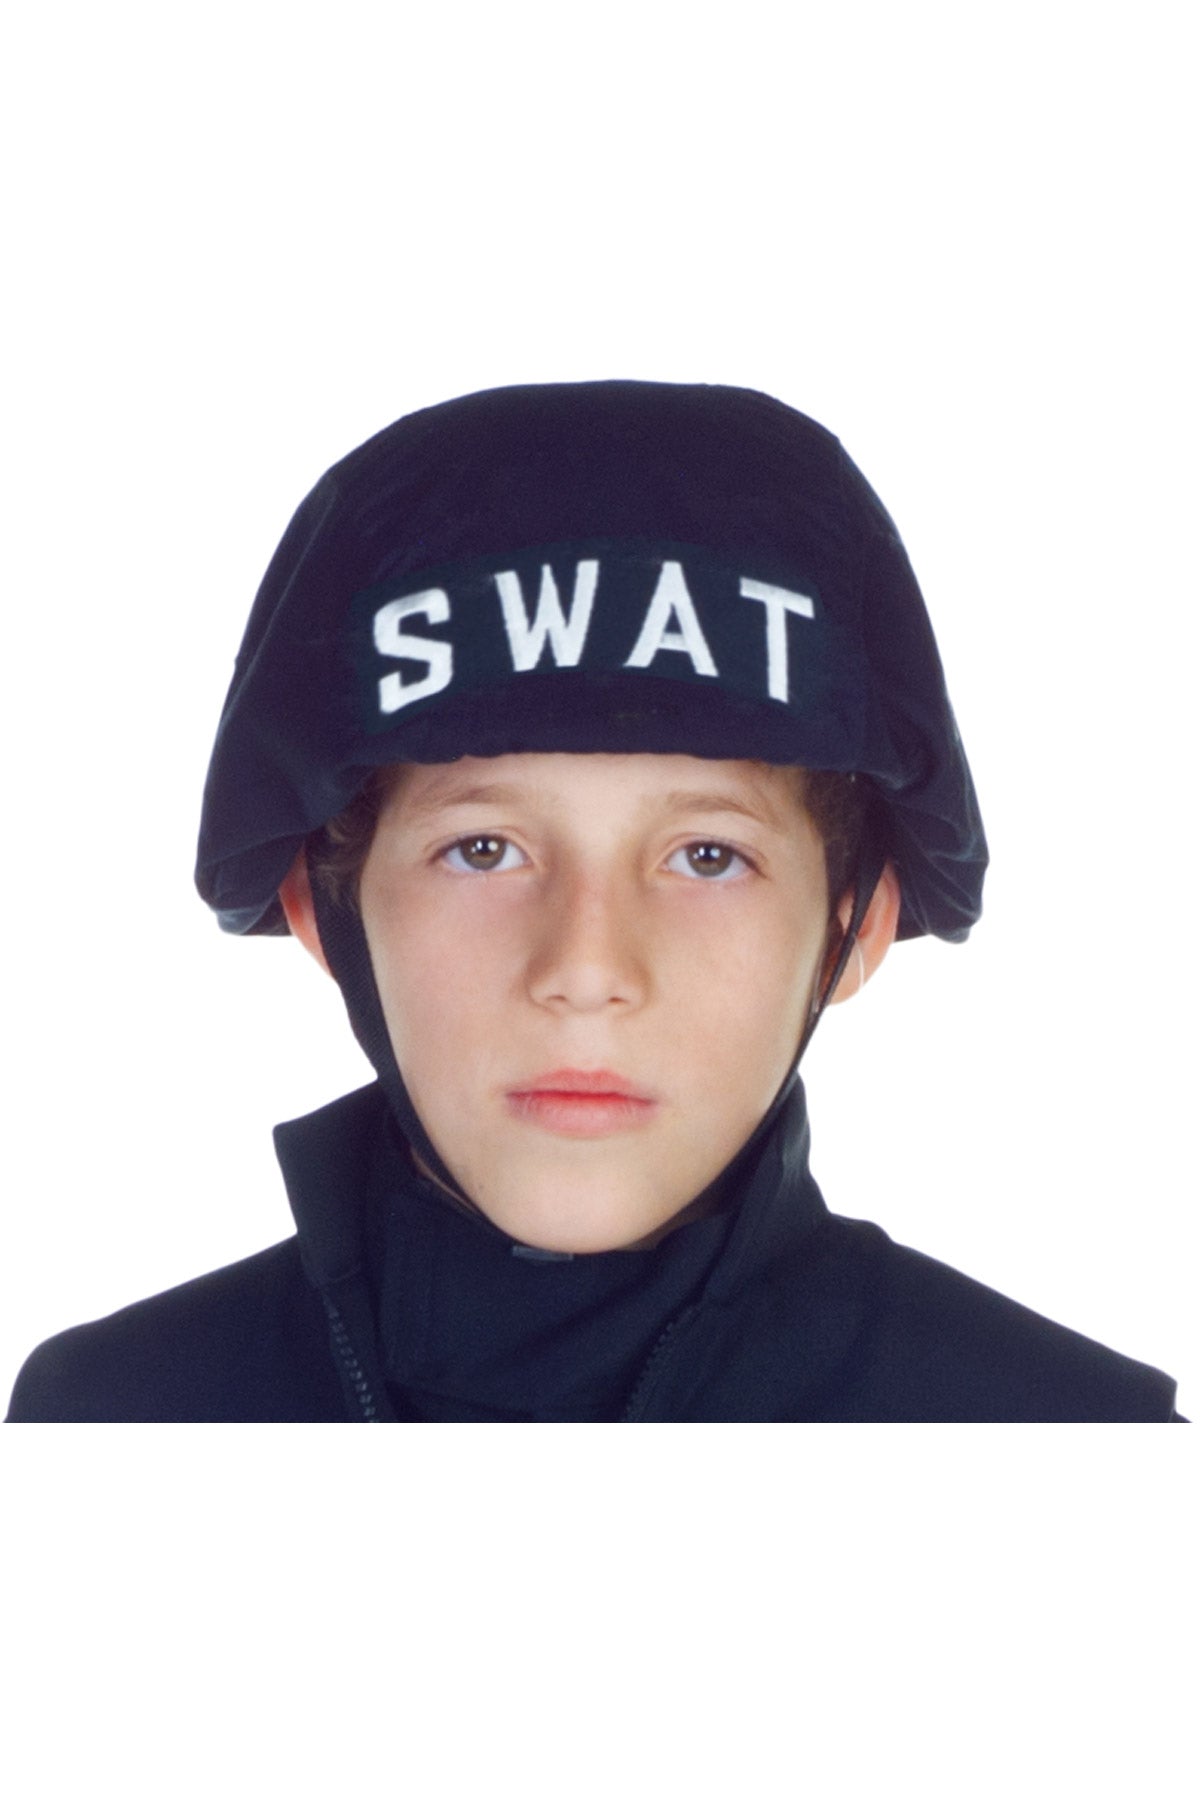 Swat Helmet Underwraps 25986